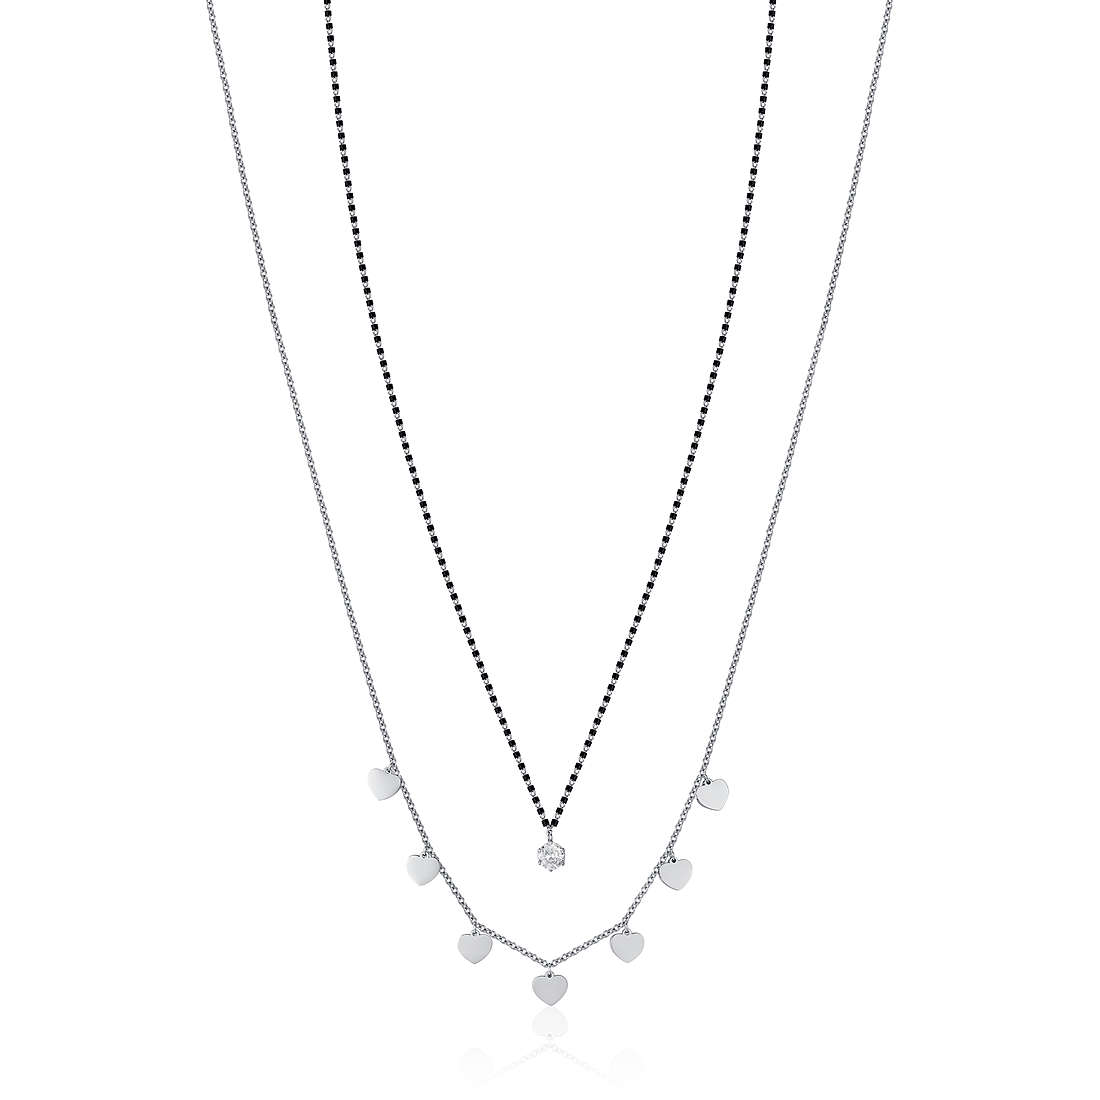 necklace Steel woman jewel Zircons CK1778